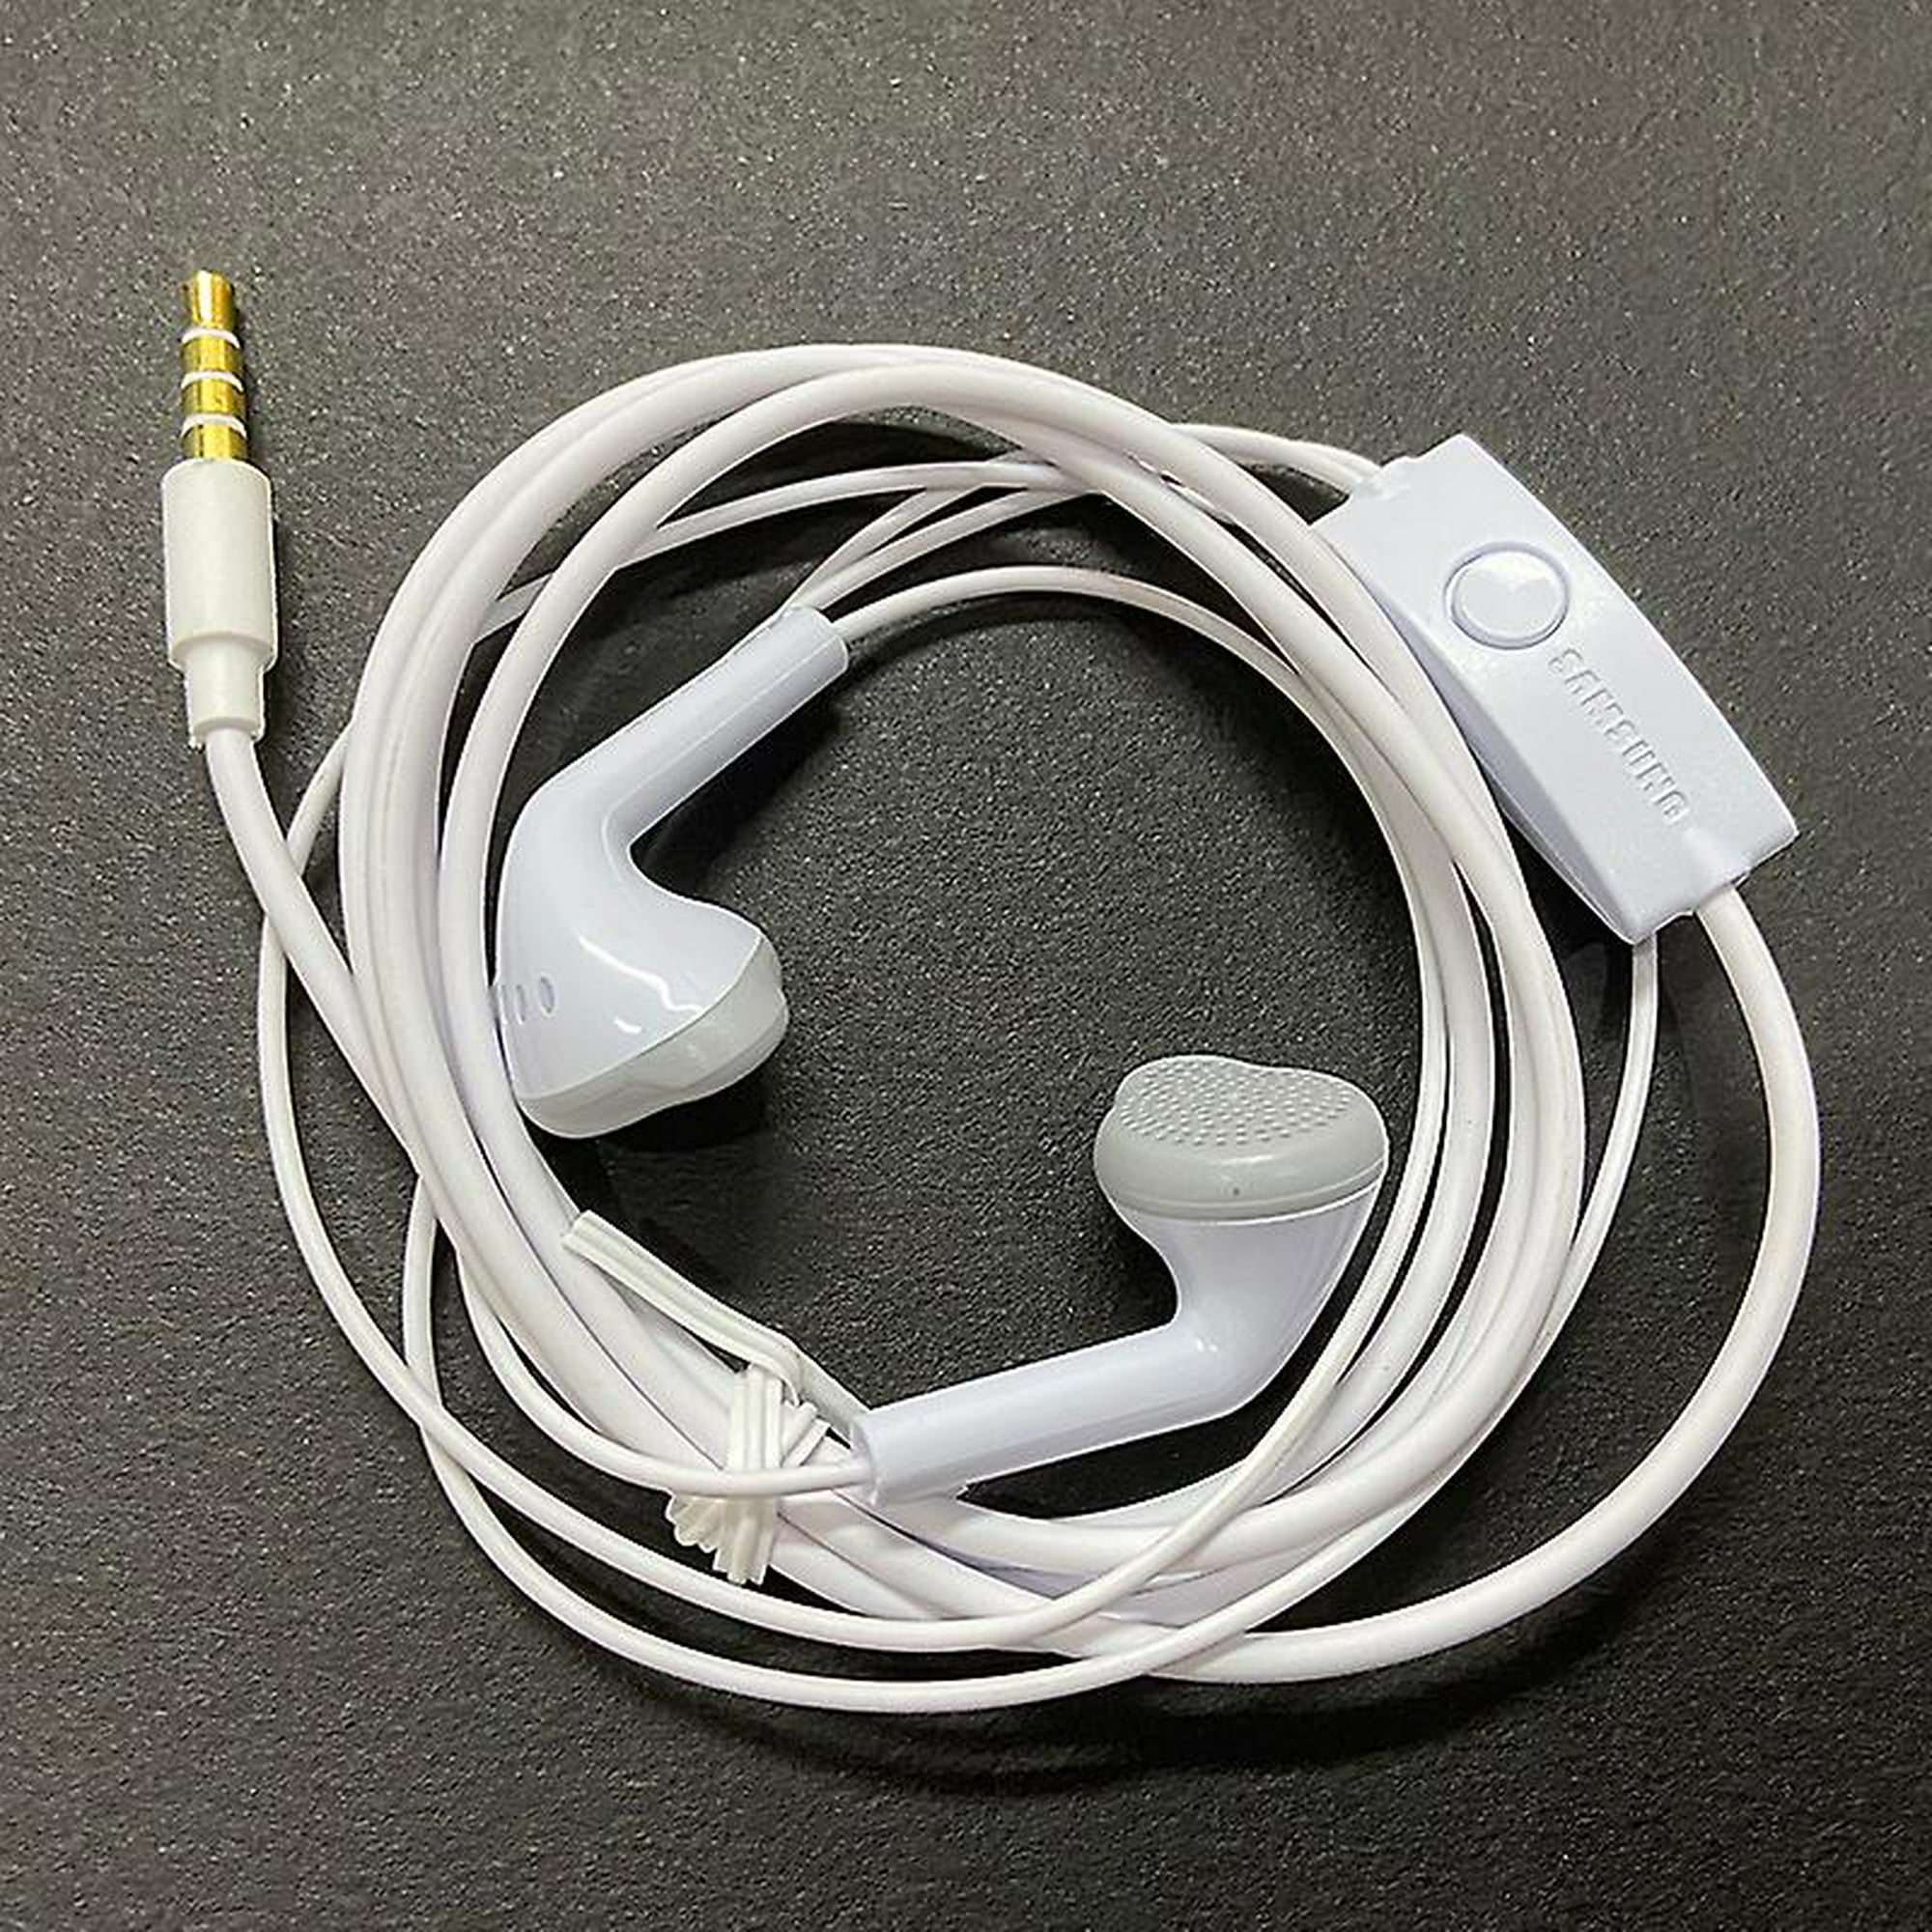 Auriculares ehs61 con cable con micrófono para Samsung S5830 S7562